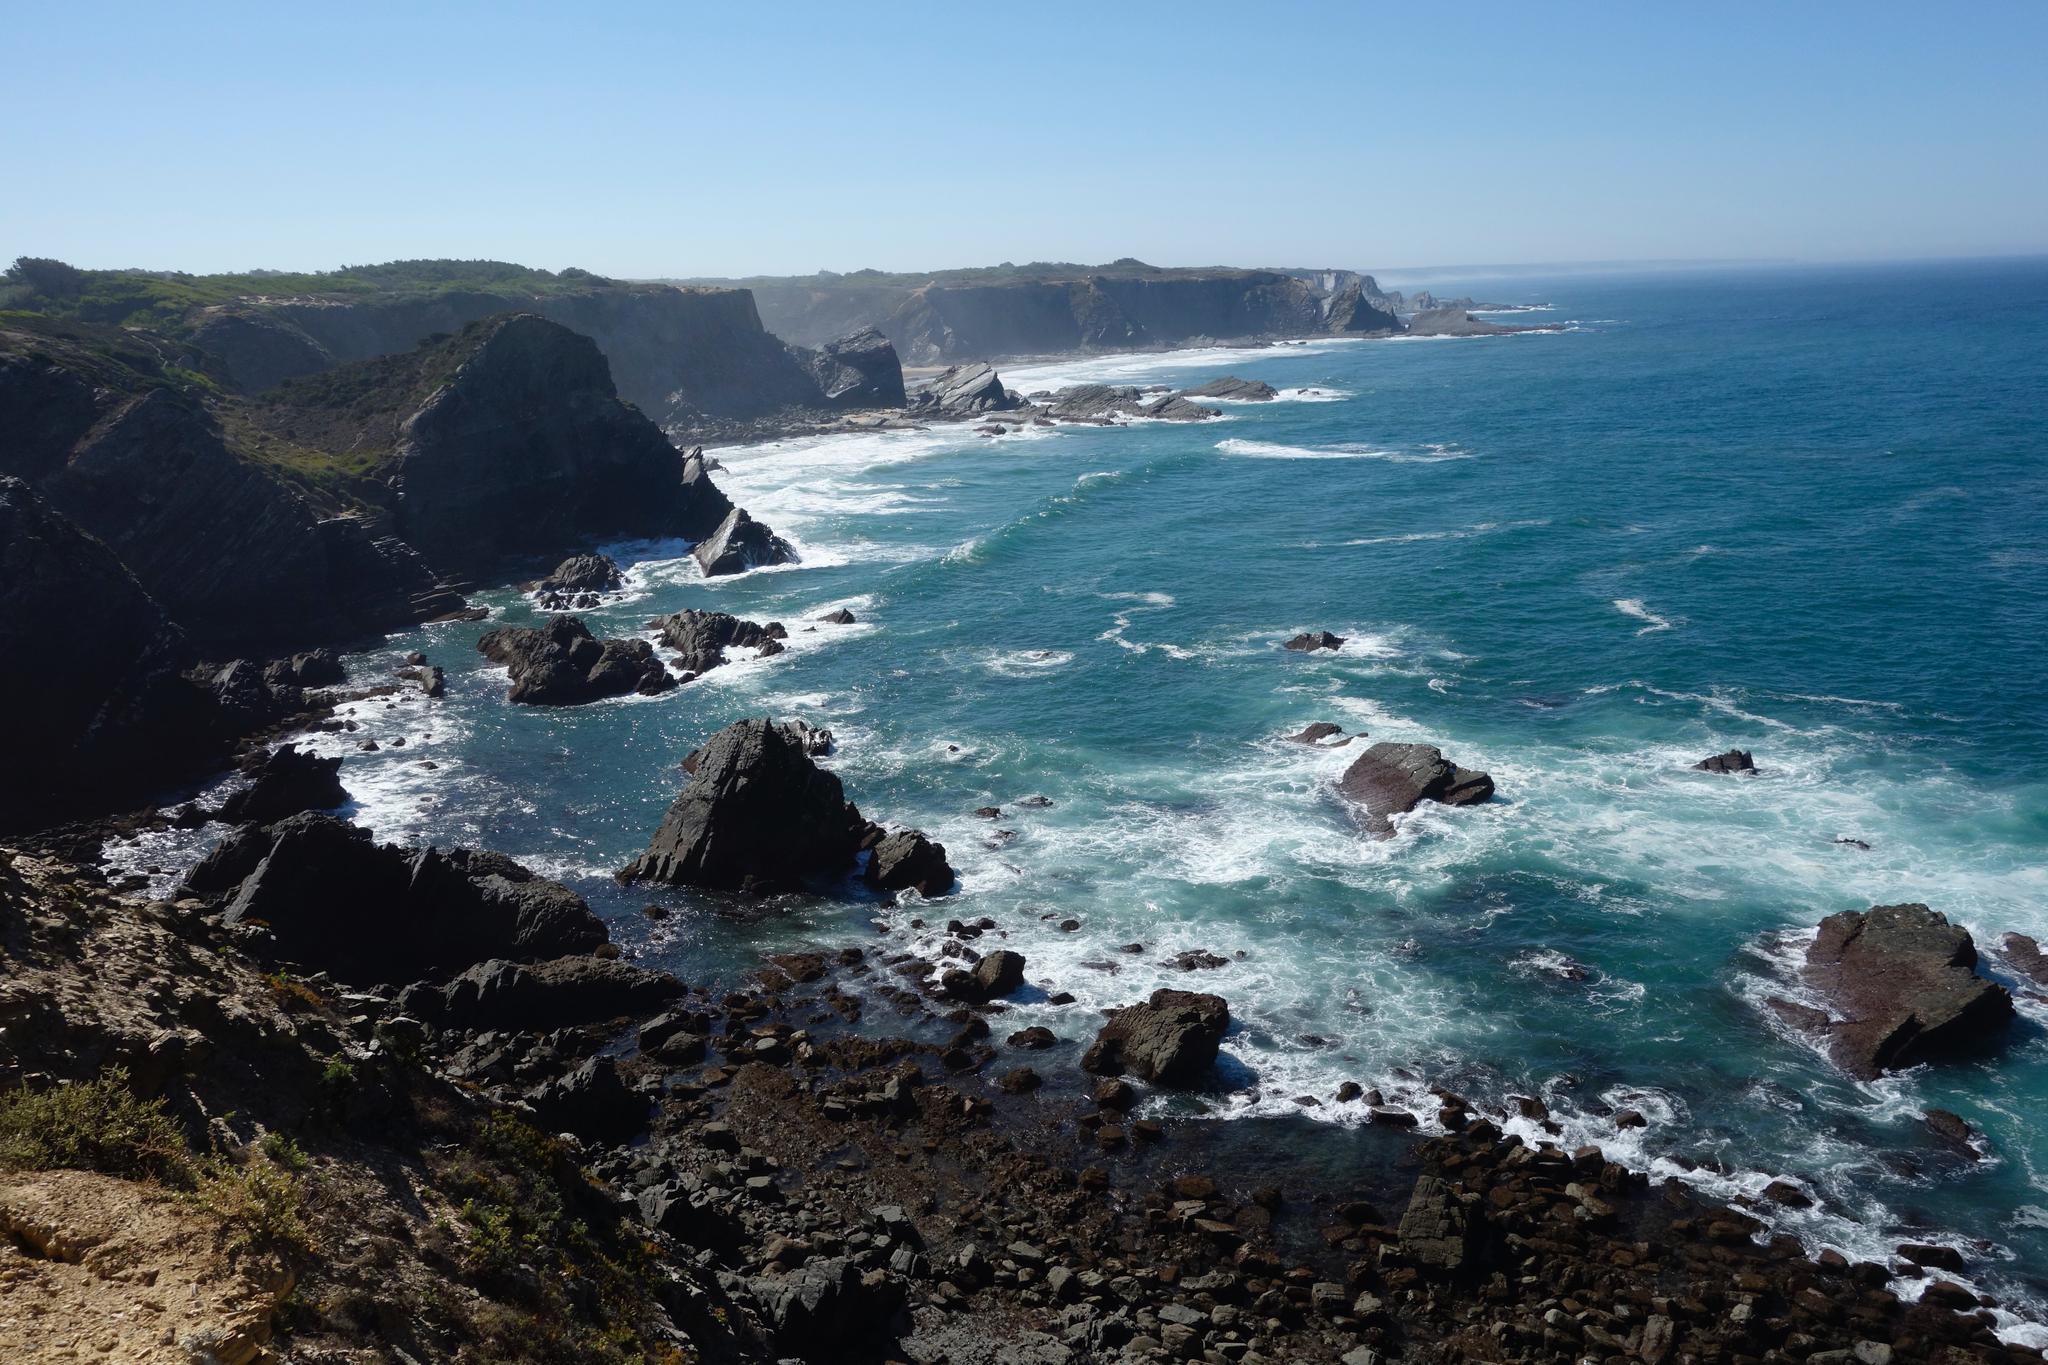 En långsamt eroderande kust, med dramatiska klippor och sandstränder nedanför en platå.